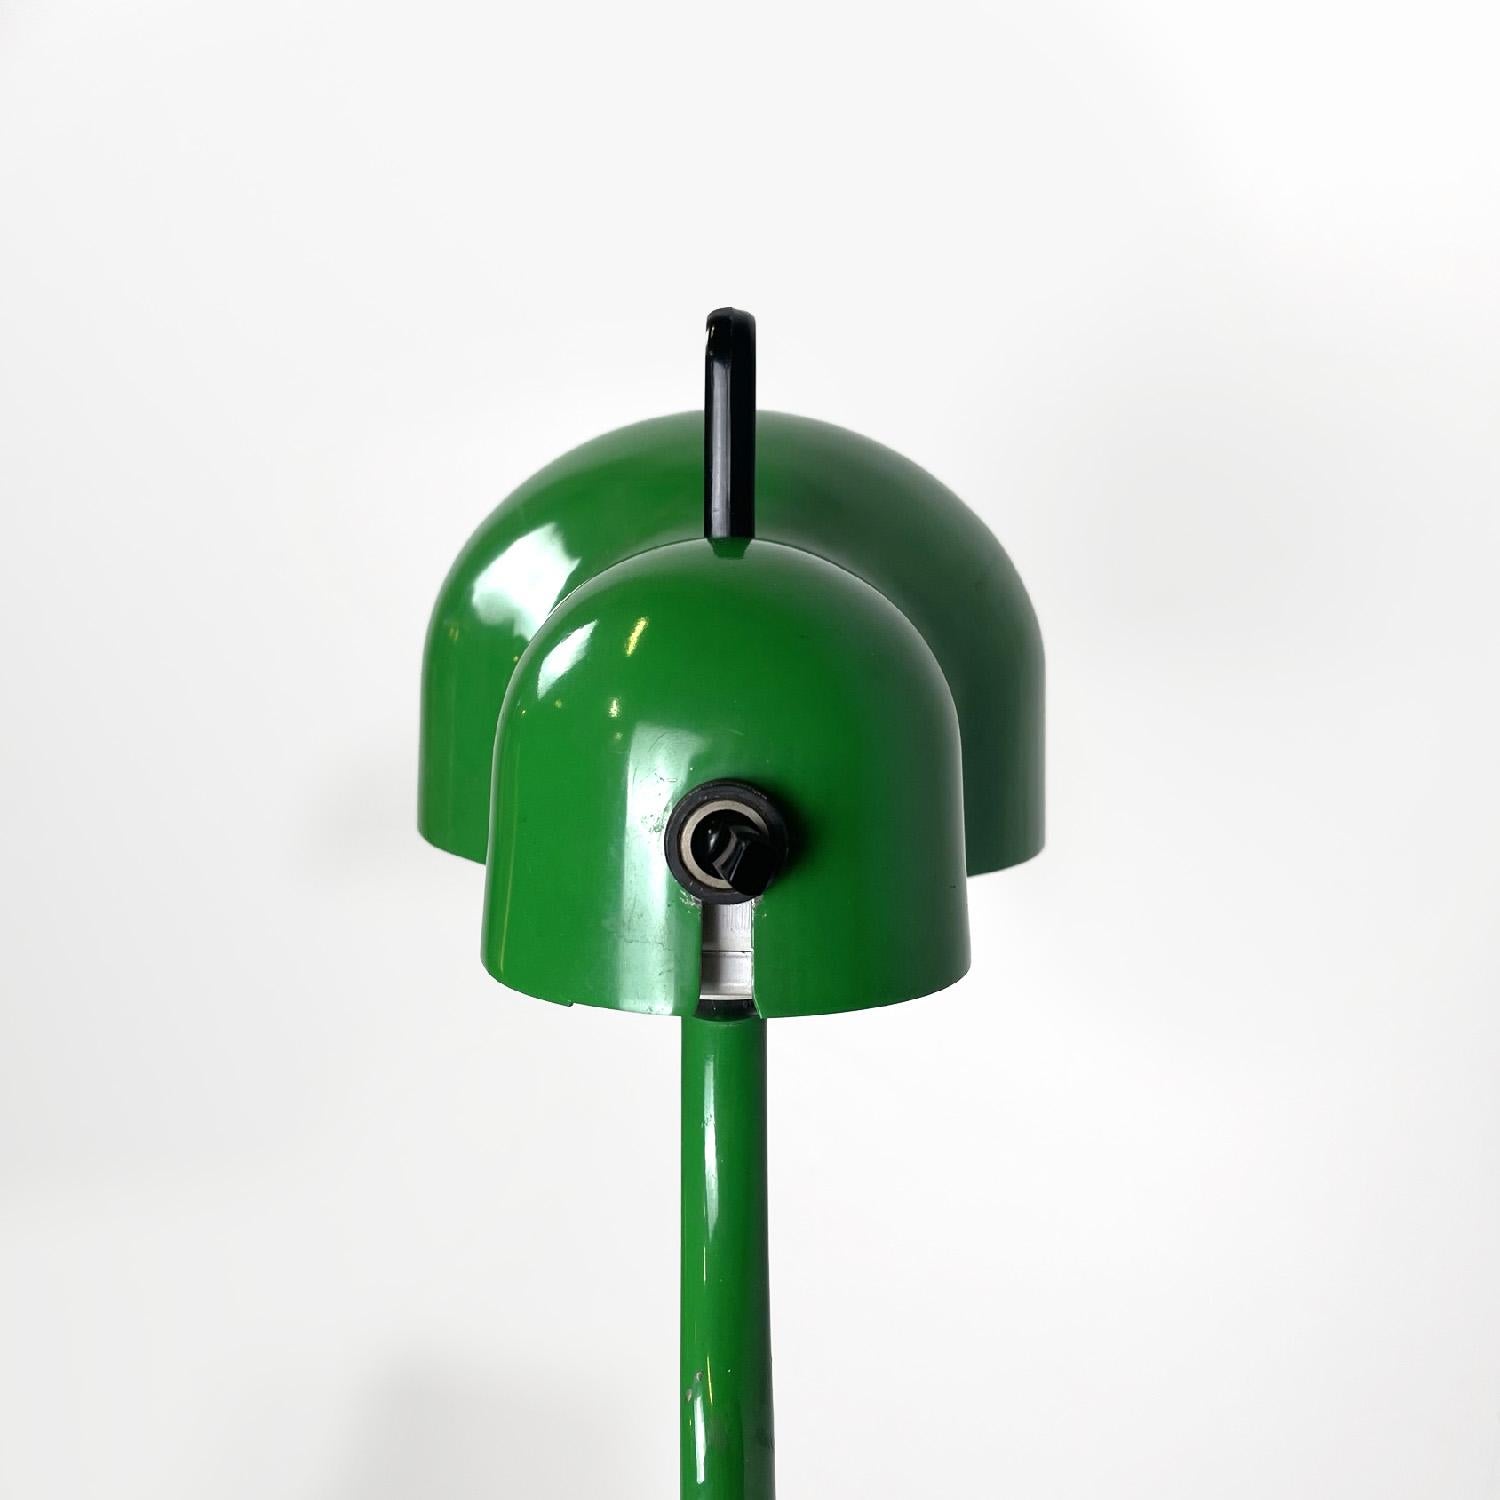 Italian modern green table lamp Topo by Joe Colombo for Stilnovo, 1970s For Sale 1